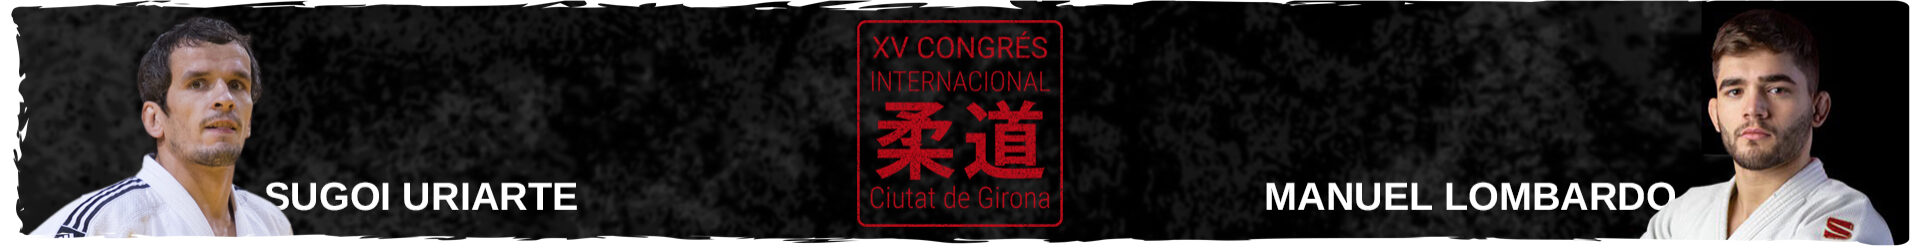 XV CONGRÉS INTERNACIONAL DE JUDO CIUTAT DE GIRONA